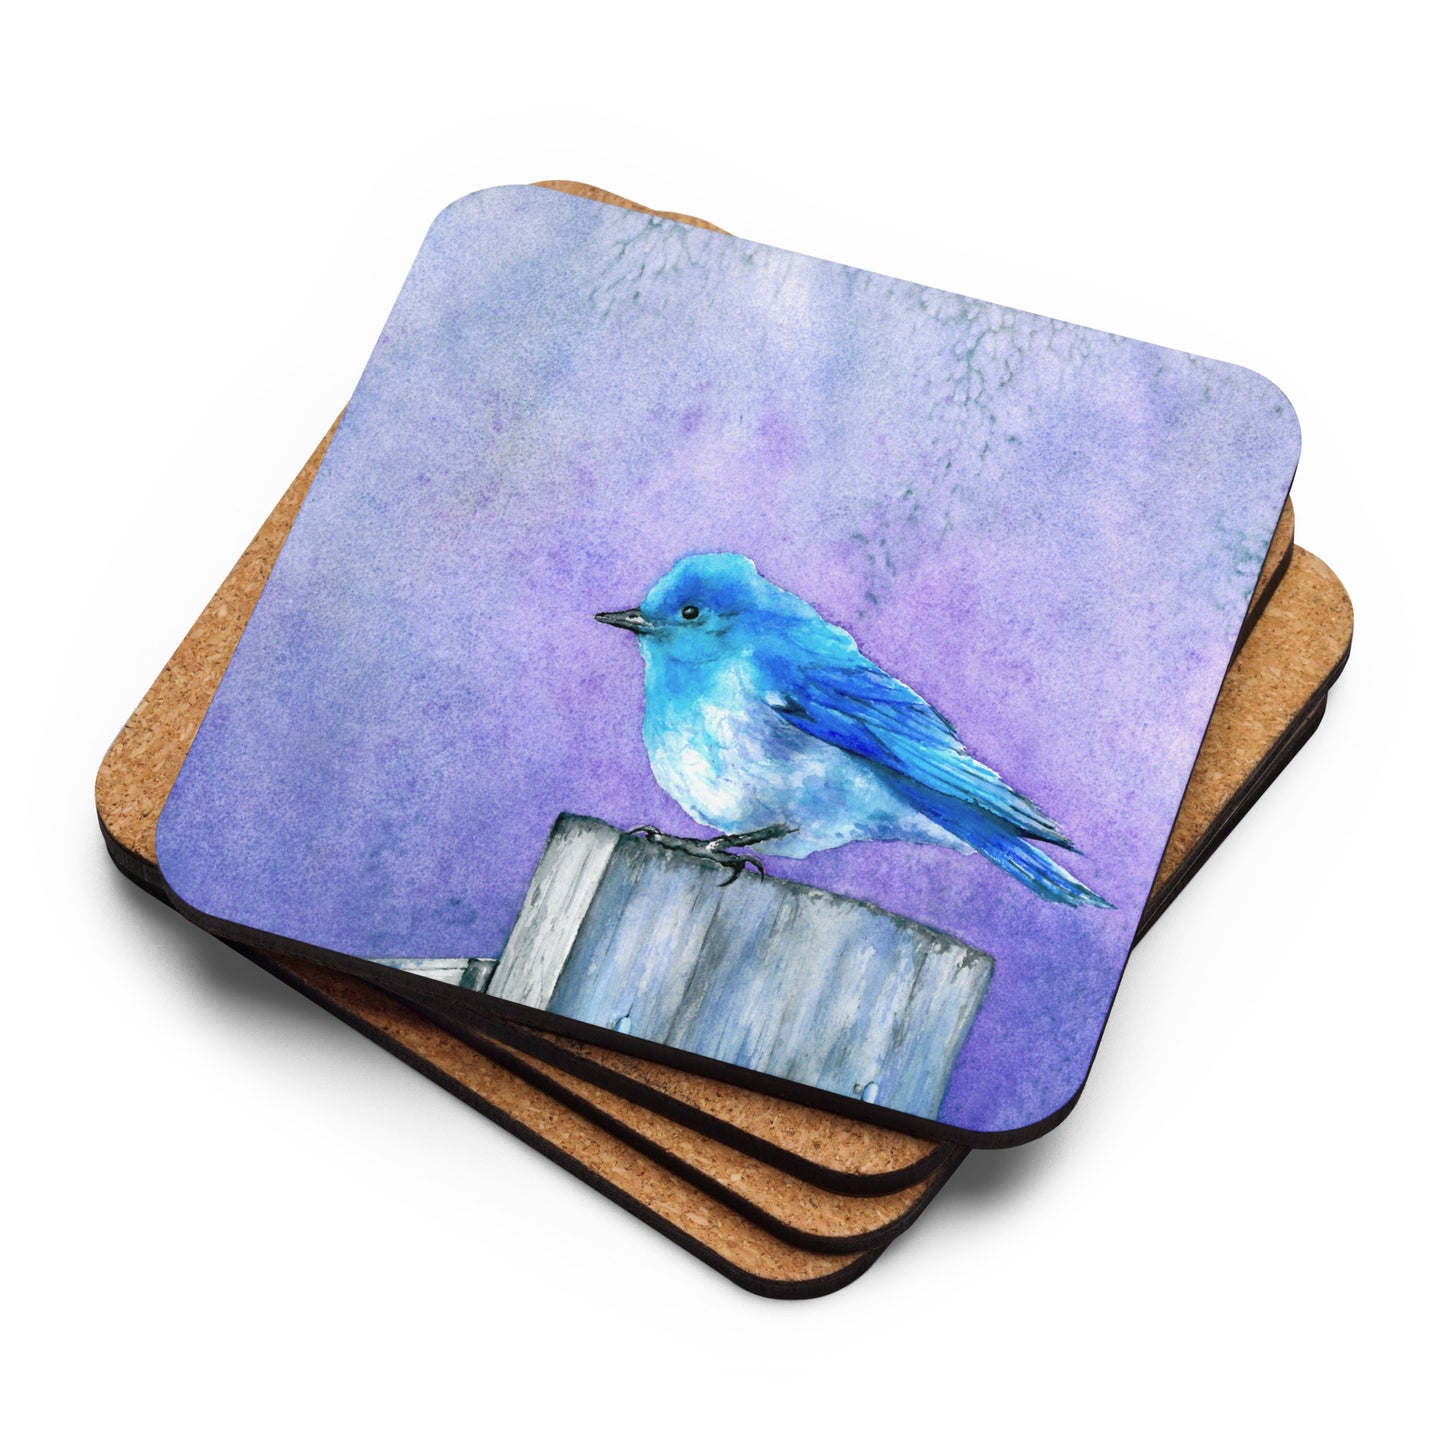 Bluebird Bliss Coaster Set